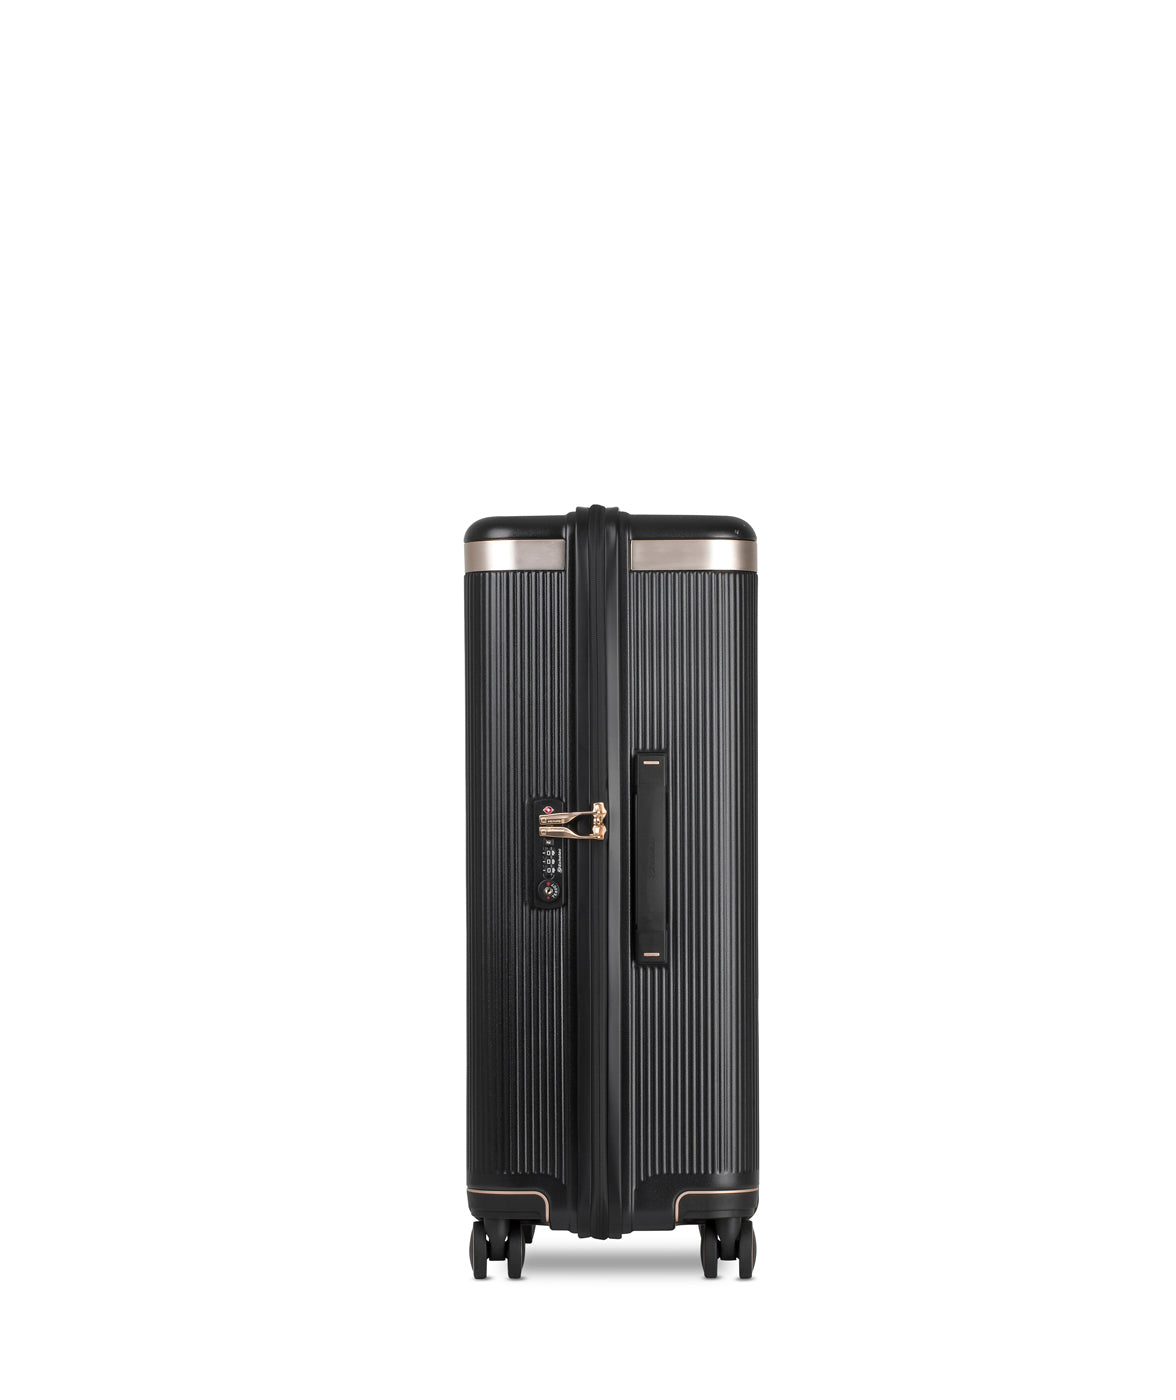 Echolac Dynasty Suitcase, Medium 67 cm, Black von Oben 